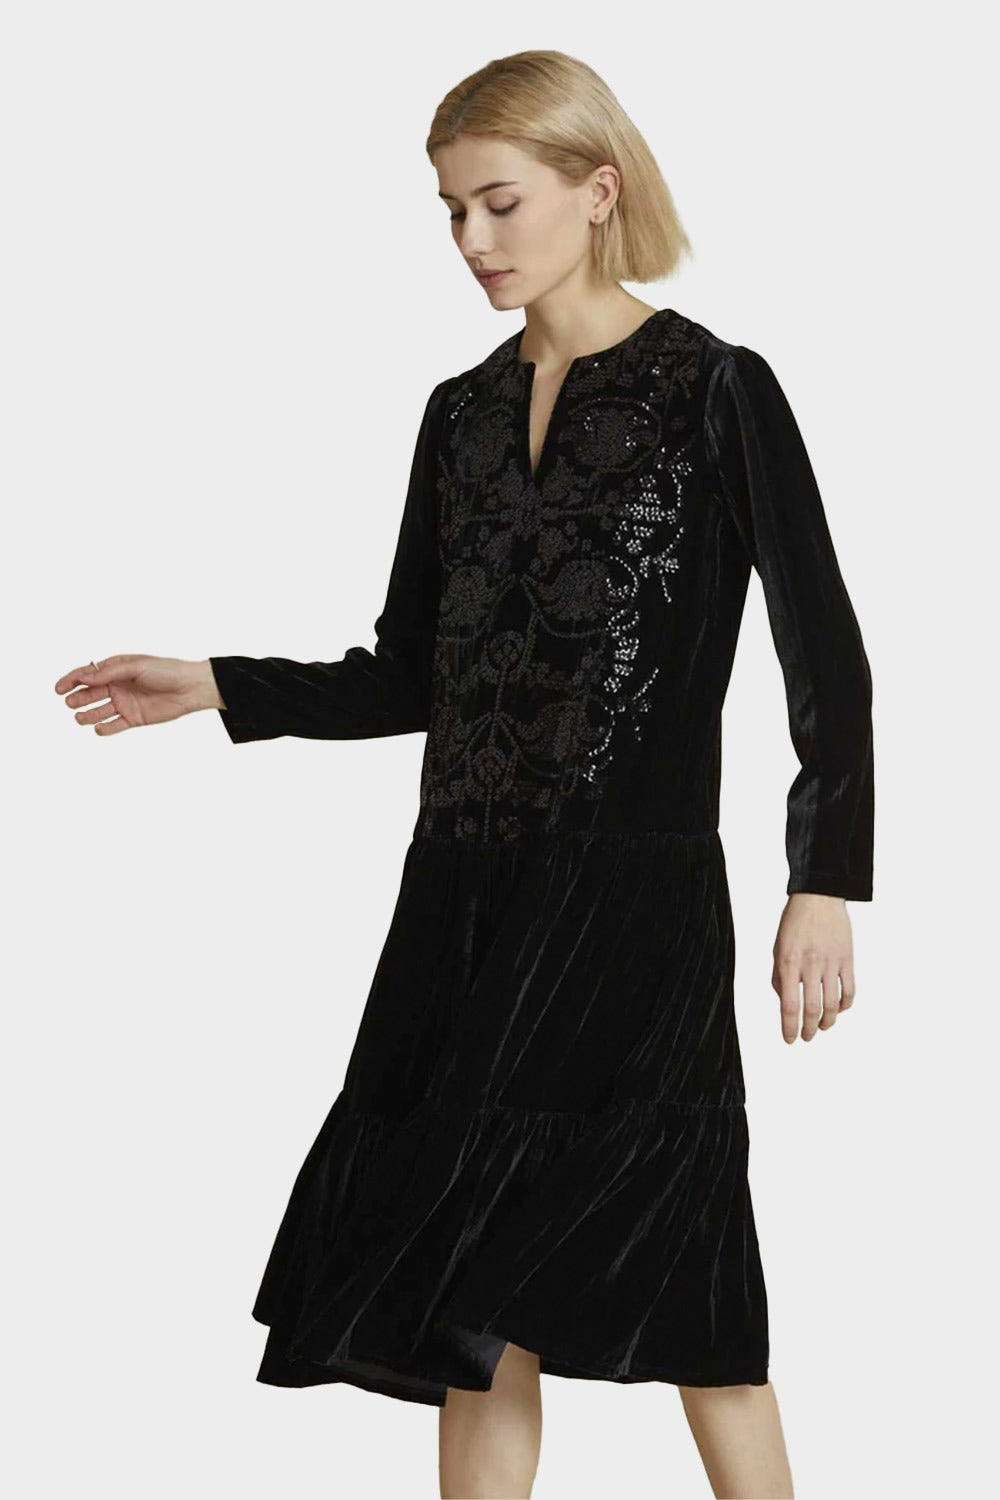 שמלת קטיפה לנשים פייטים RENE DERHY Vendome online | ונדום .